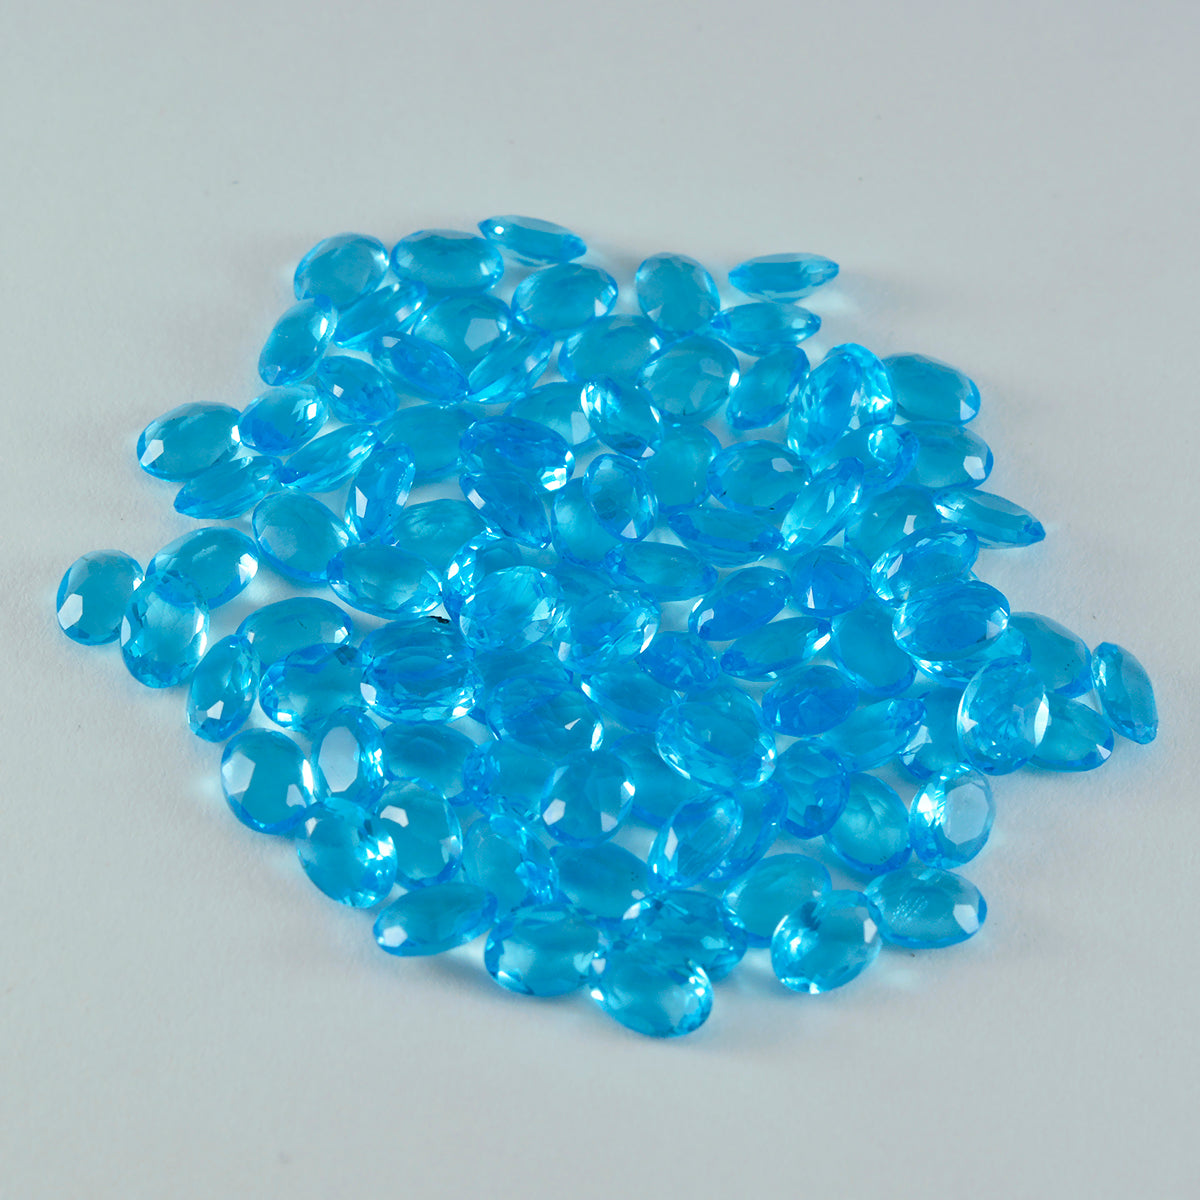 riyogems 1шт голубой топаз cz ограненный 3х5 мм овальной формы +1 качественный драгоценный камень отдельно